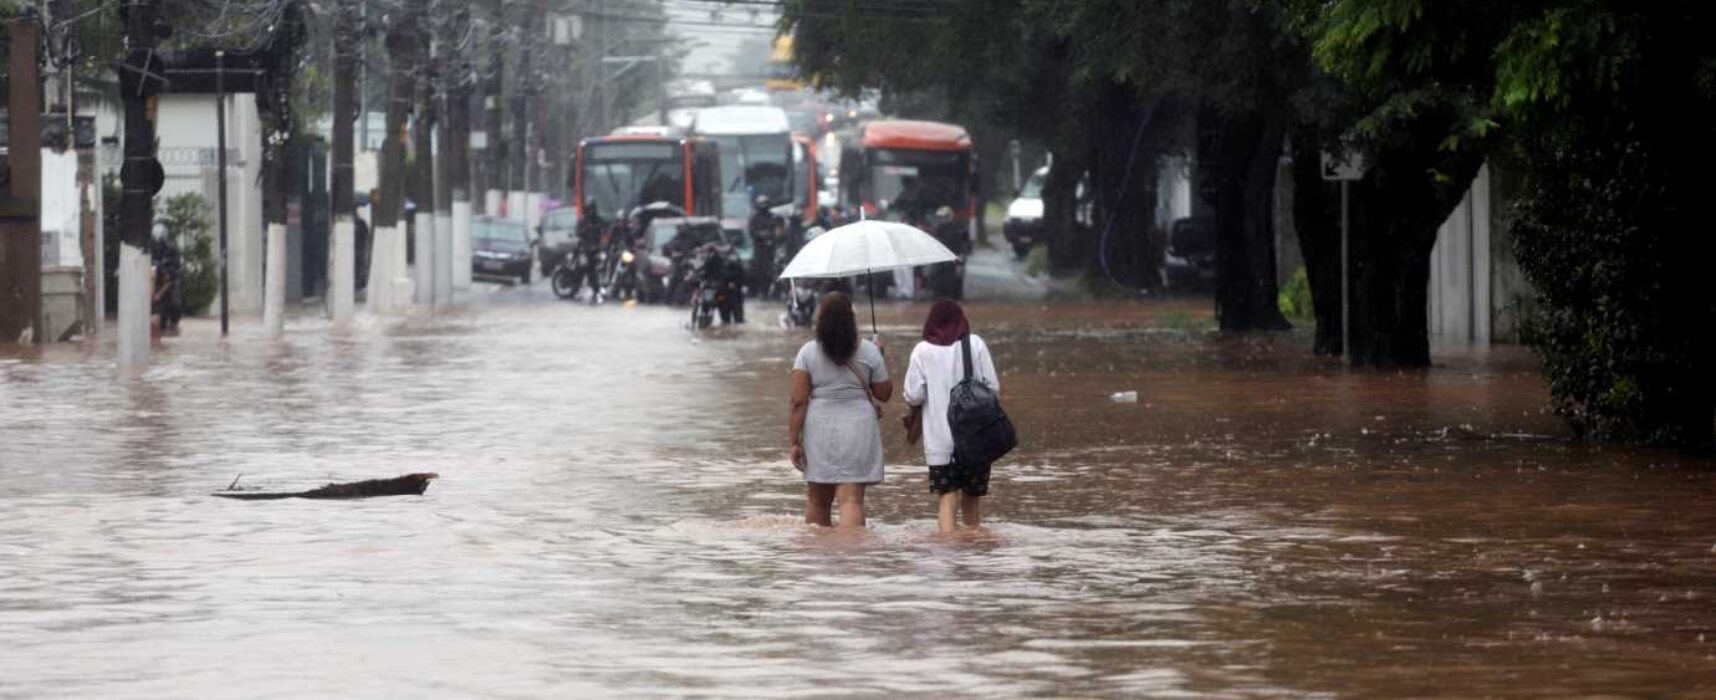 Defesa Civil prevê mais chuva em Salvador durante o fim de semana